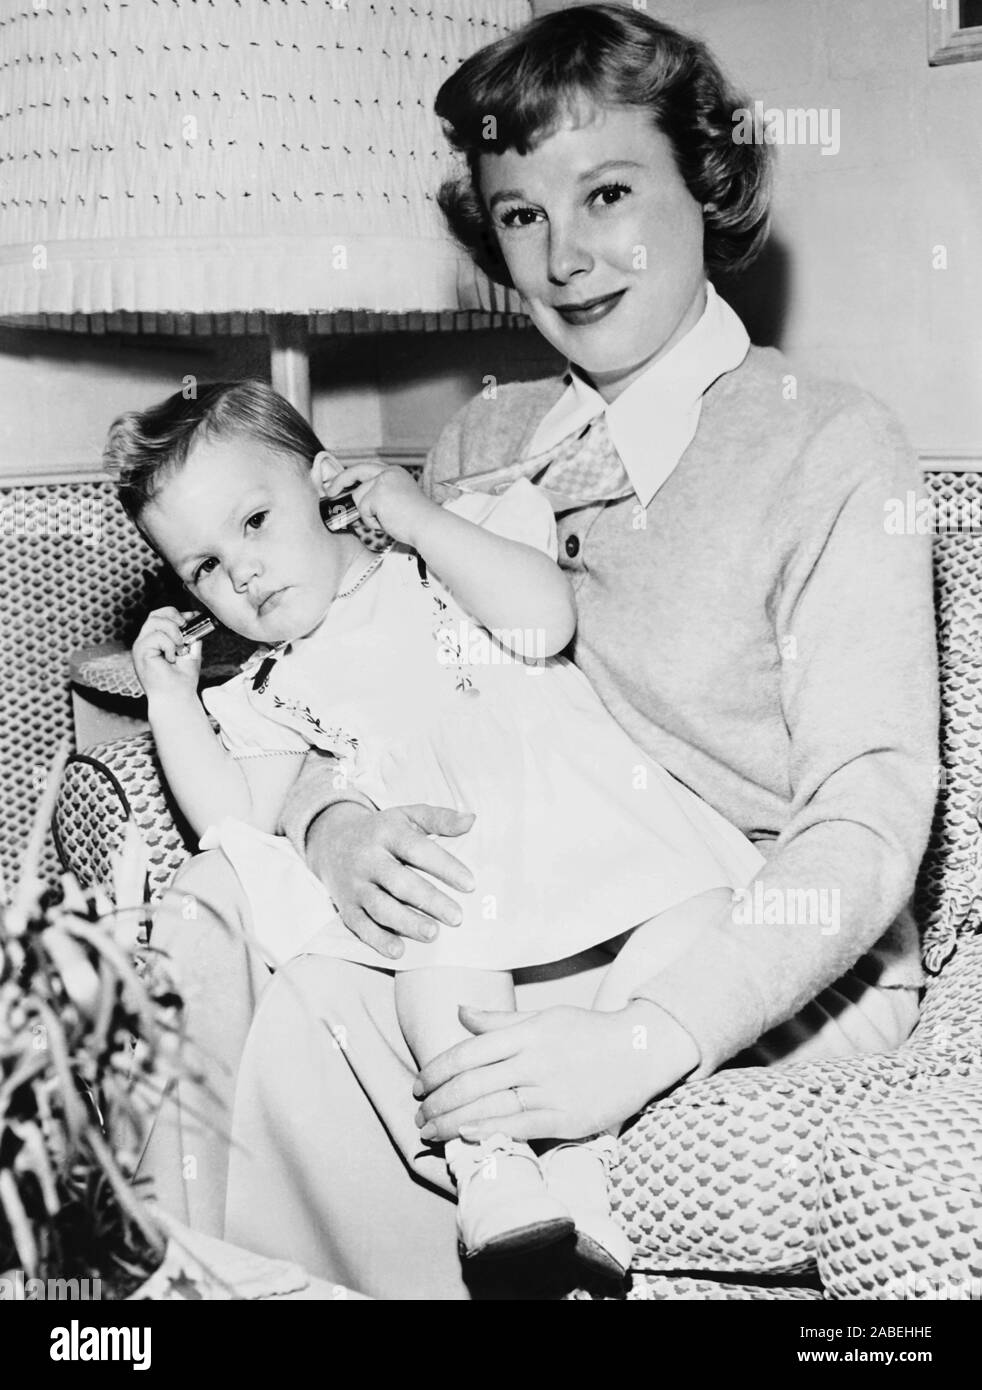 Croce di destra, Giugno Allyson con la figlia Pamela Powell sul set, 1950  Foto stock - Alamy